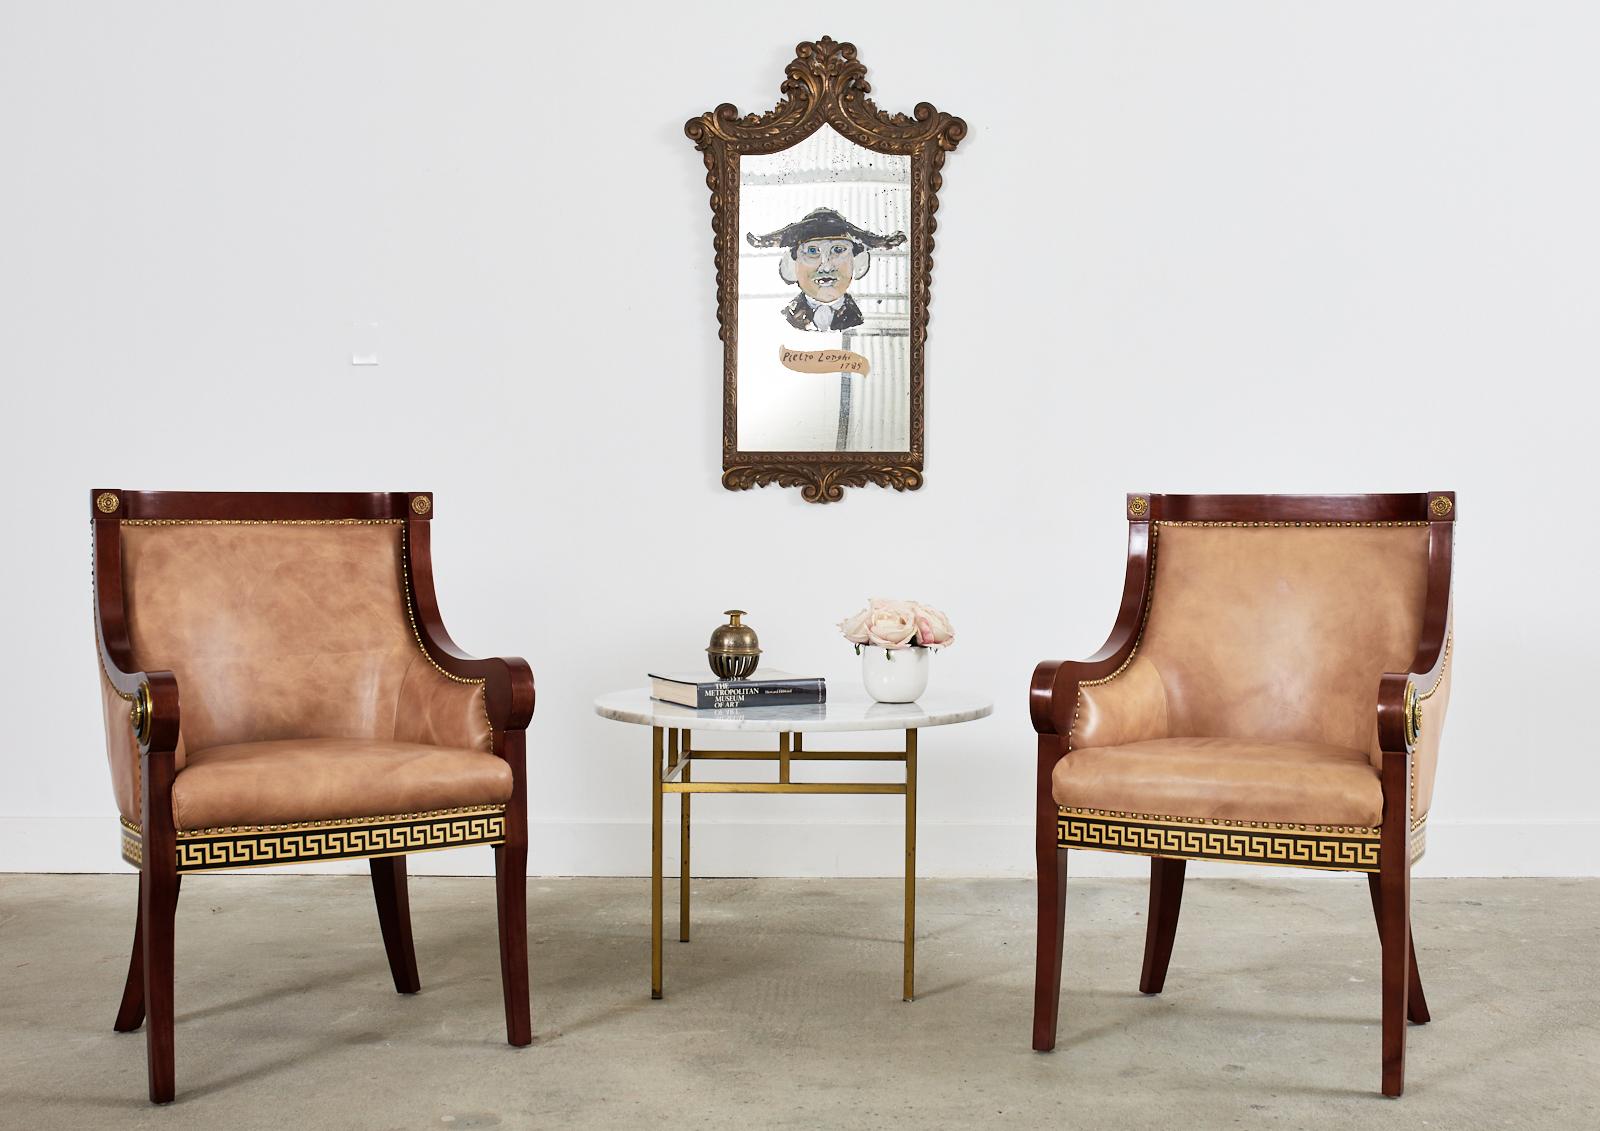 Paire de fauteuils maximaliste de style empire revival présentant des motifs inspirés de Versace. Les chaises ont un cadre classique en forme de gondole avec un revêtement en similicuir Naugahyde. Le similicuir est bordé de têtes de clous en laiton